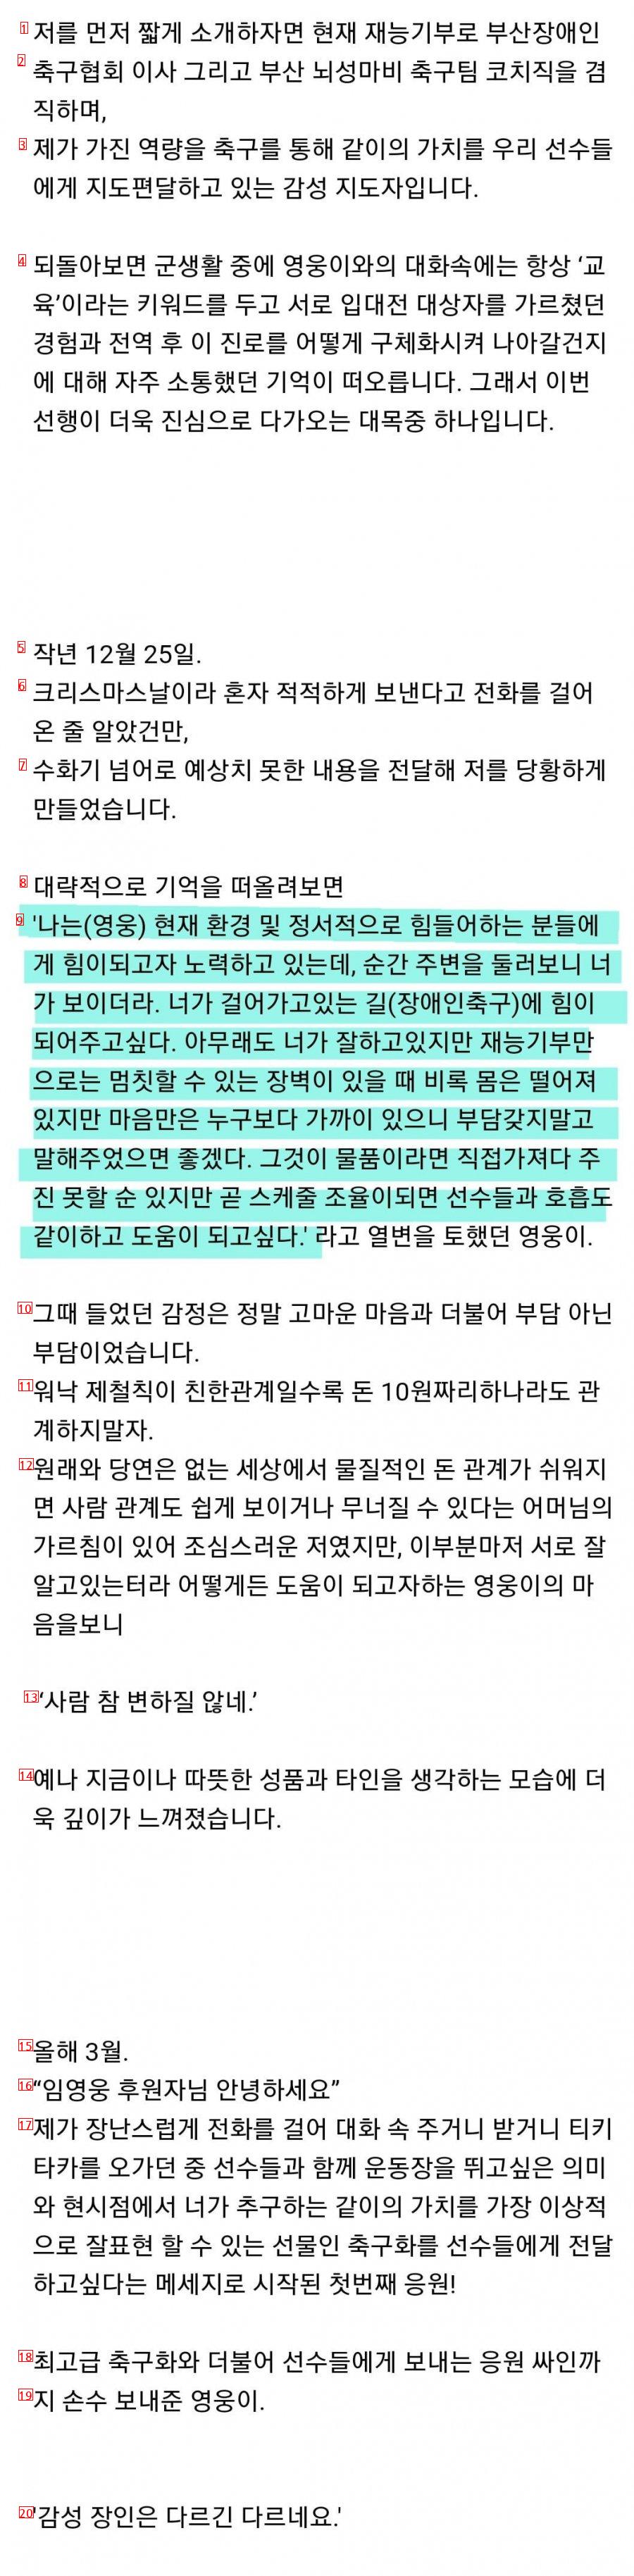 임영웅 근황..뇌성마비 축구팀 축구화 지원..jpg